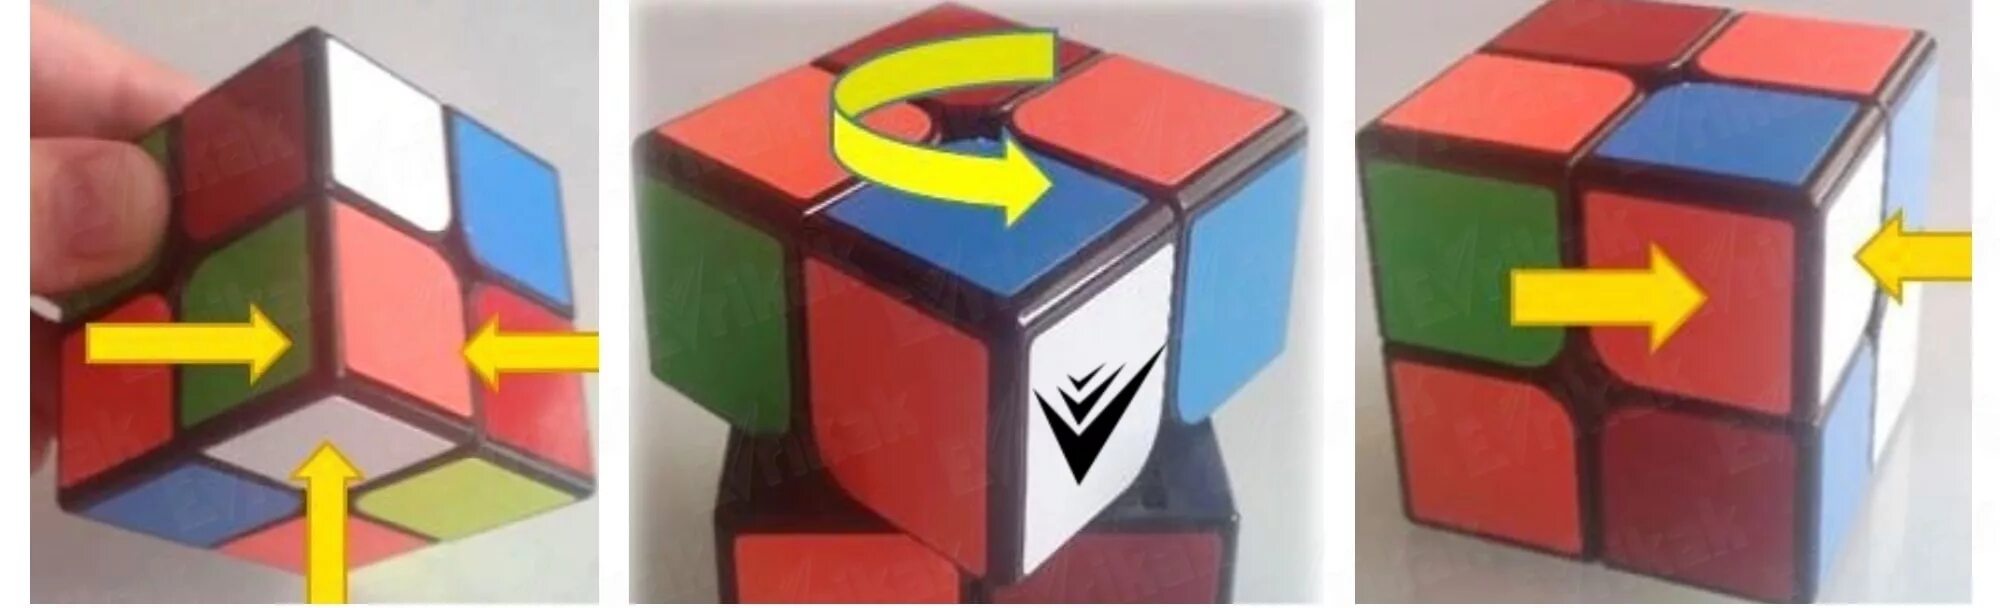 Комбинации кубика Рубика 2 на 2. Сборка кубика Рубика 2х2 ПИФ-паф. ПИФ паф кубик 2x2. ПИФ паф кубик Рубика 2х2.